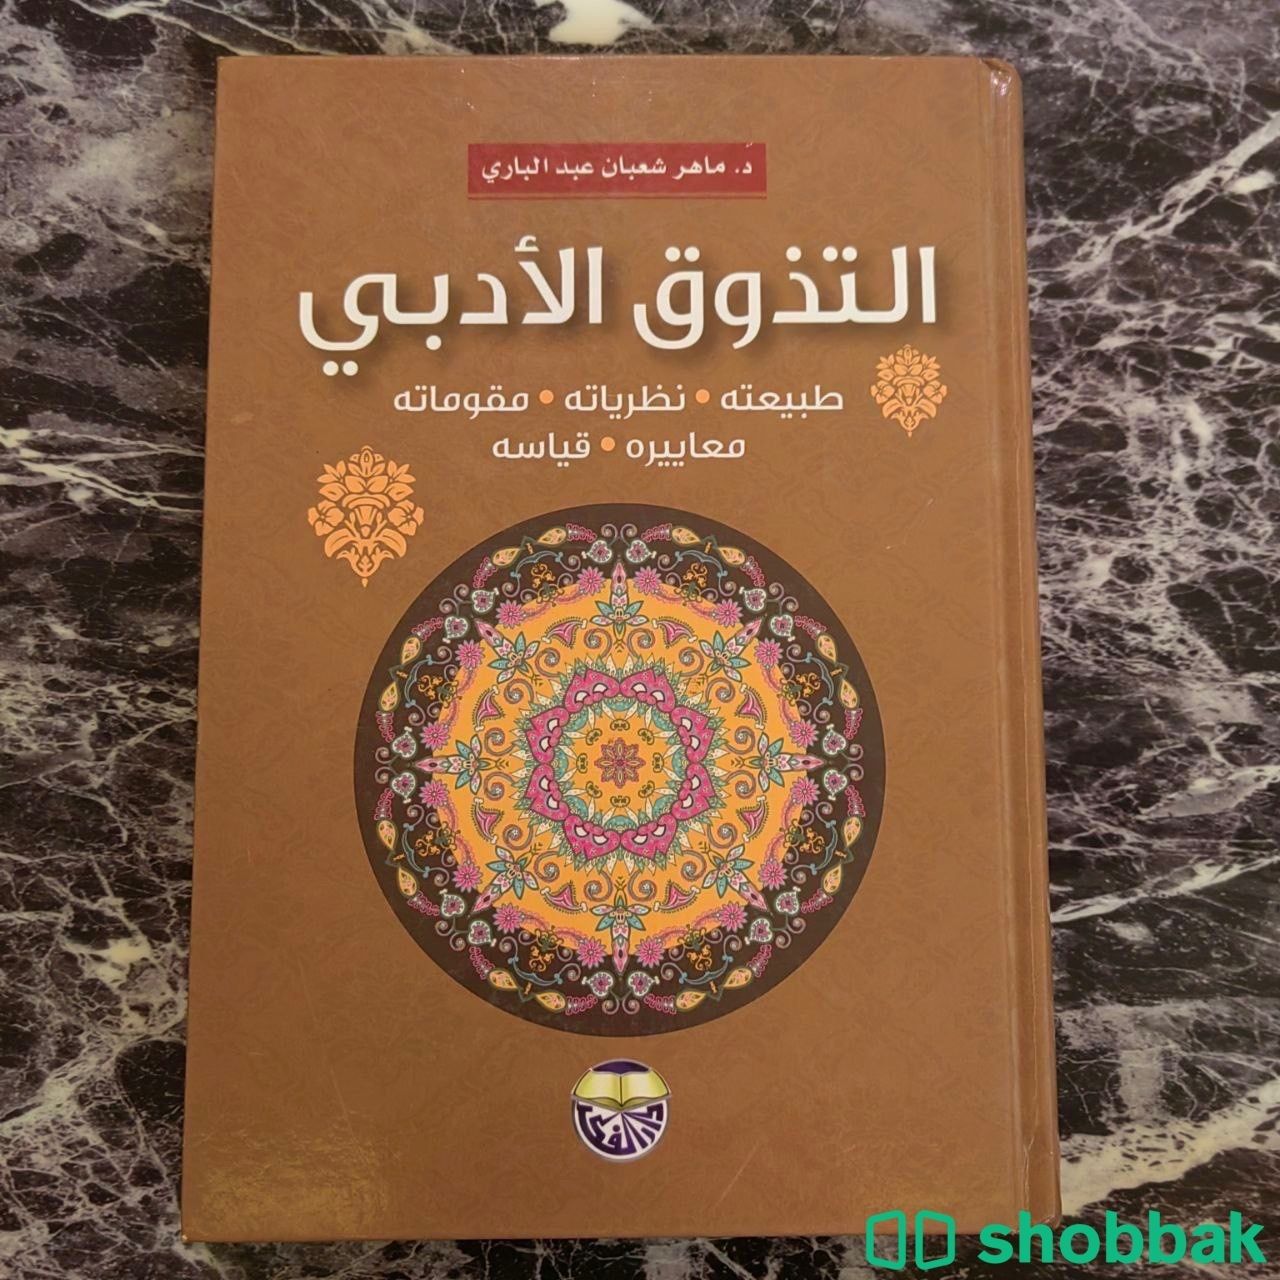 كتاب التذوق الأدبي د. ماهر شعبان عبد الباري بأقلّ الأسعار شباك السعودية